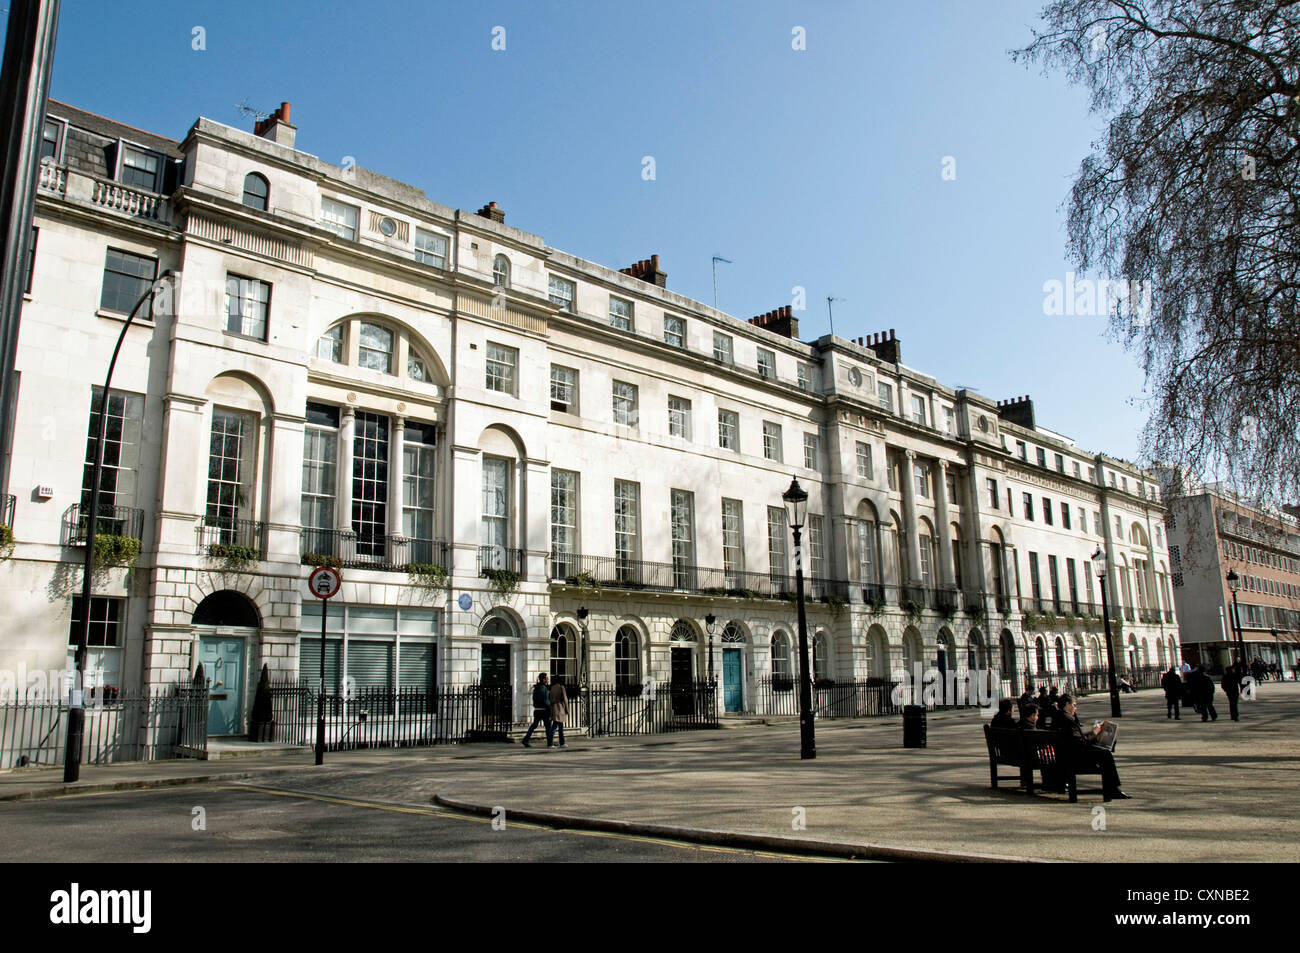 Fitzroy Square, une place géorgienne dans Fitzrovia, Camden Londres Angleterre Royaume-uni Banque D'Images